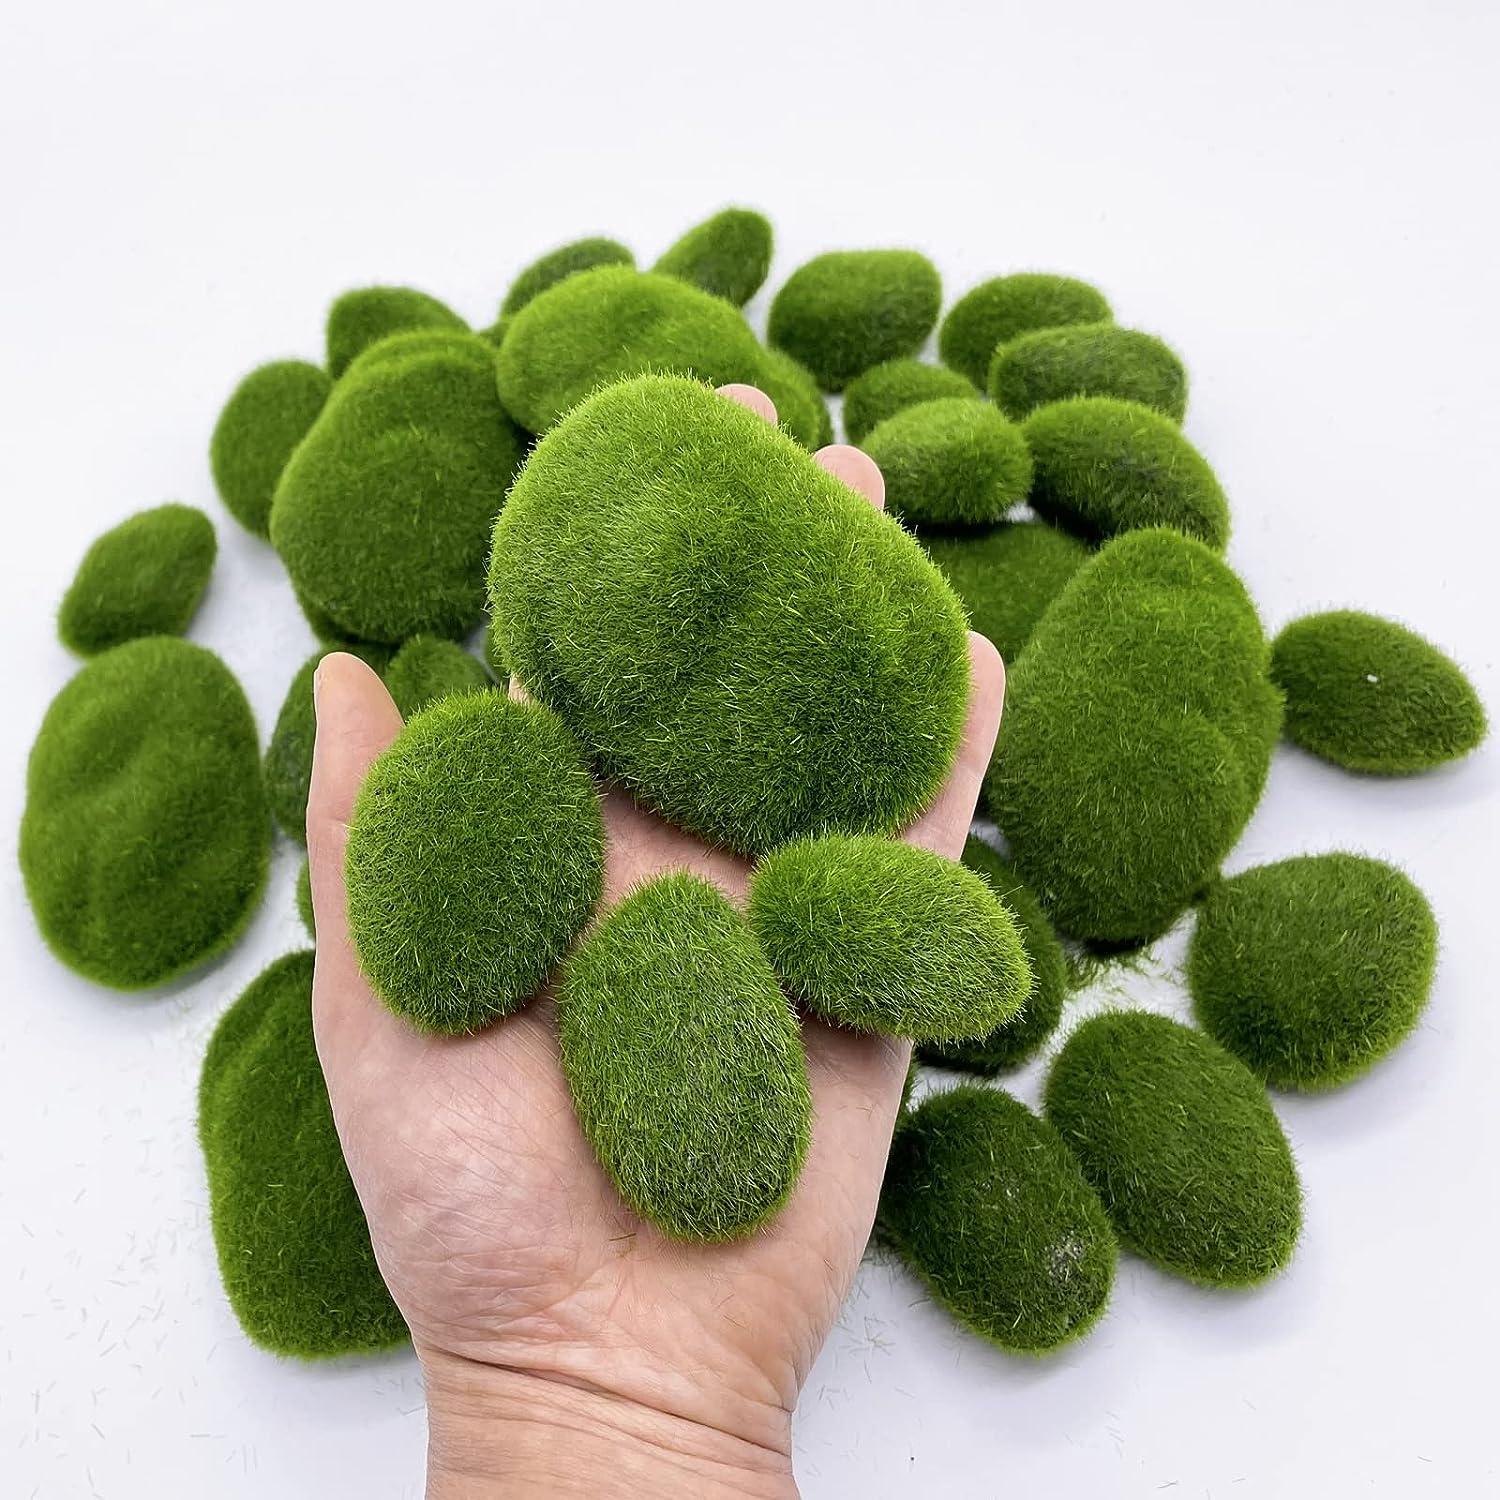 DUENEW 40PCS Artificial Moss Rocks Decorative Moss Balls Green